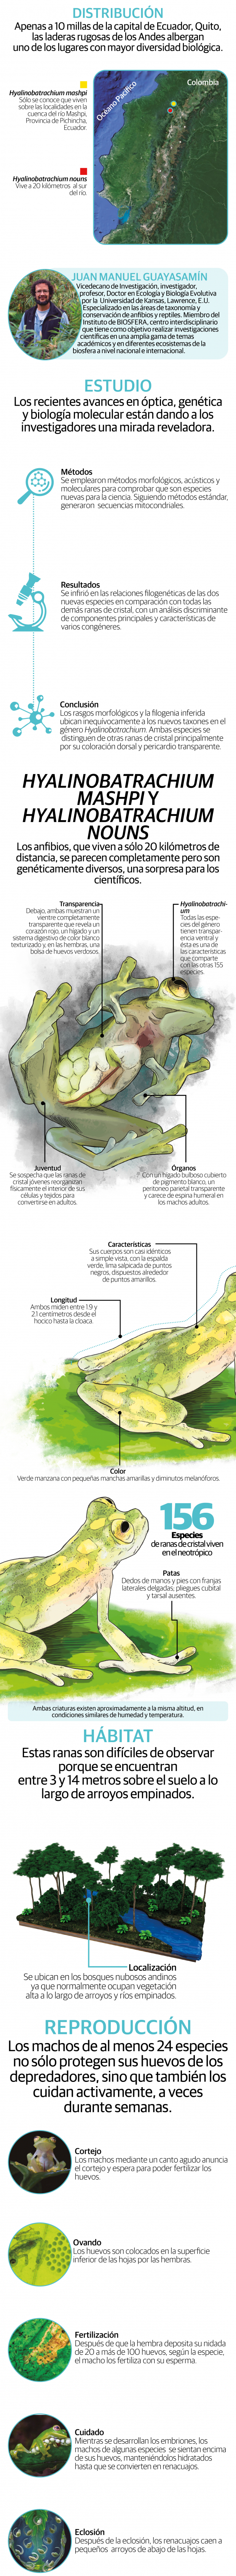 Nombran a dos nuevas especies de ranas de cristal en el Ecuador